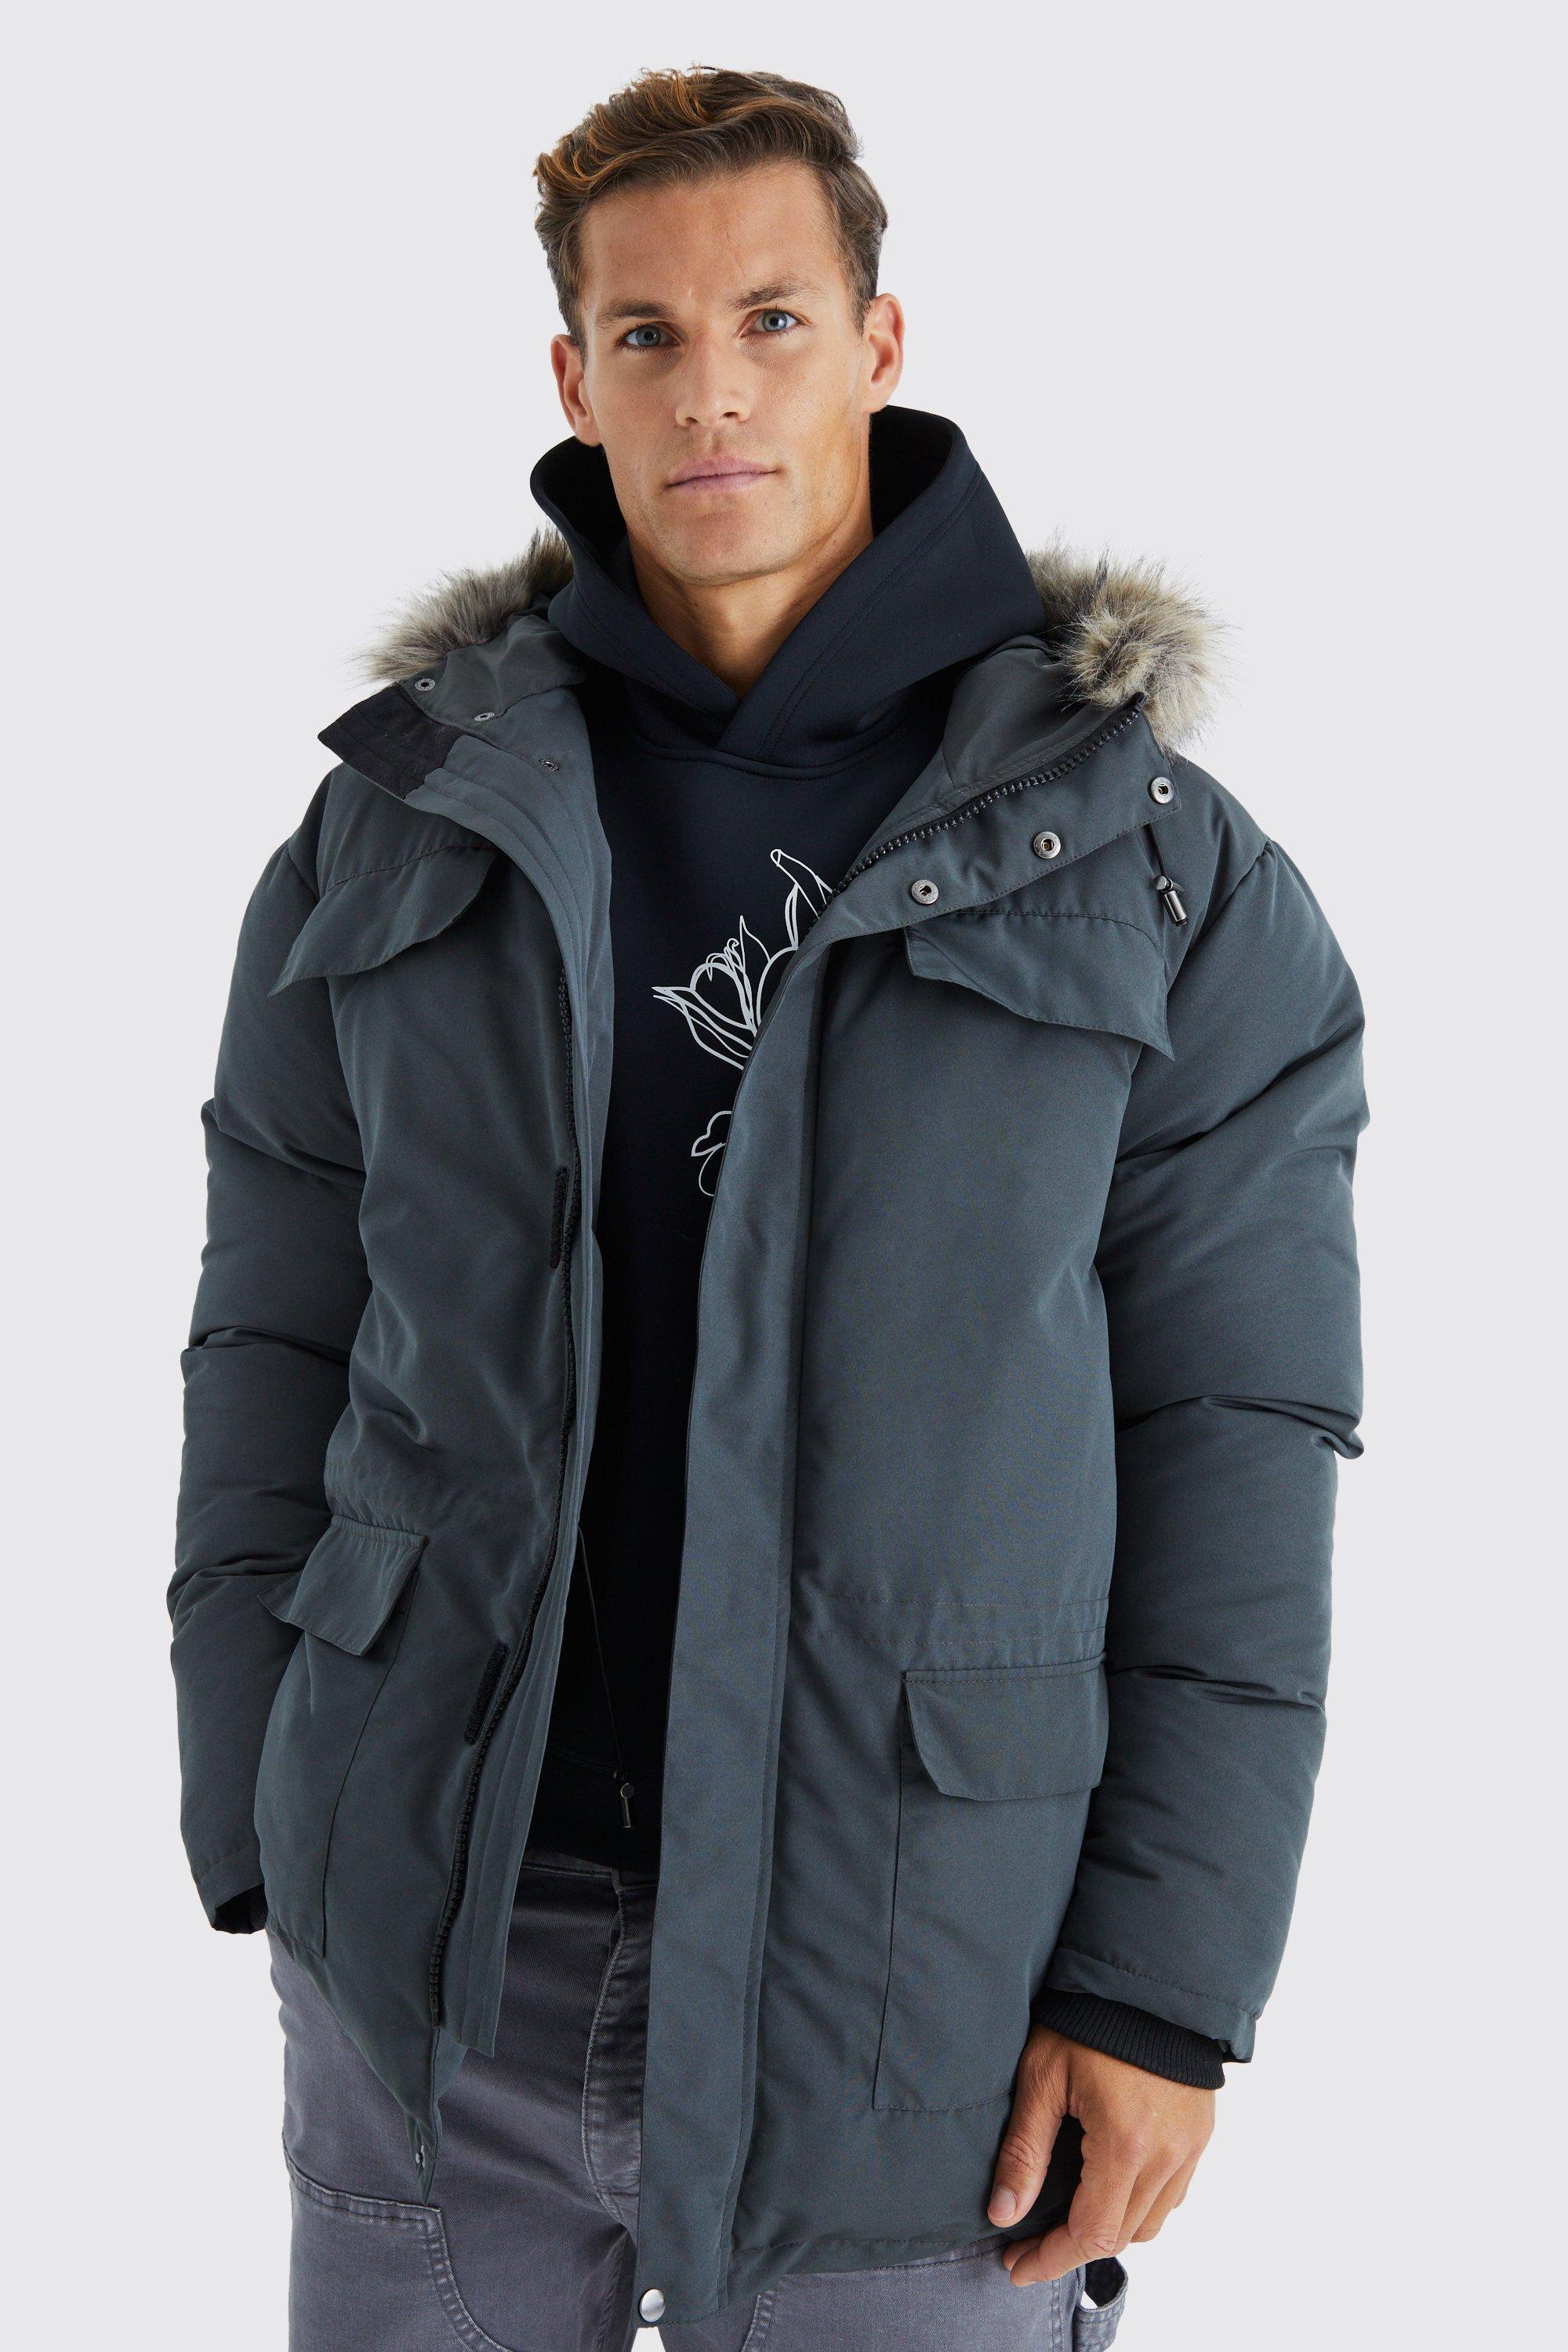 tall - parka d'hiver à capuche avec bord en fausse fourrure homme - gris - xxl, gris